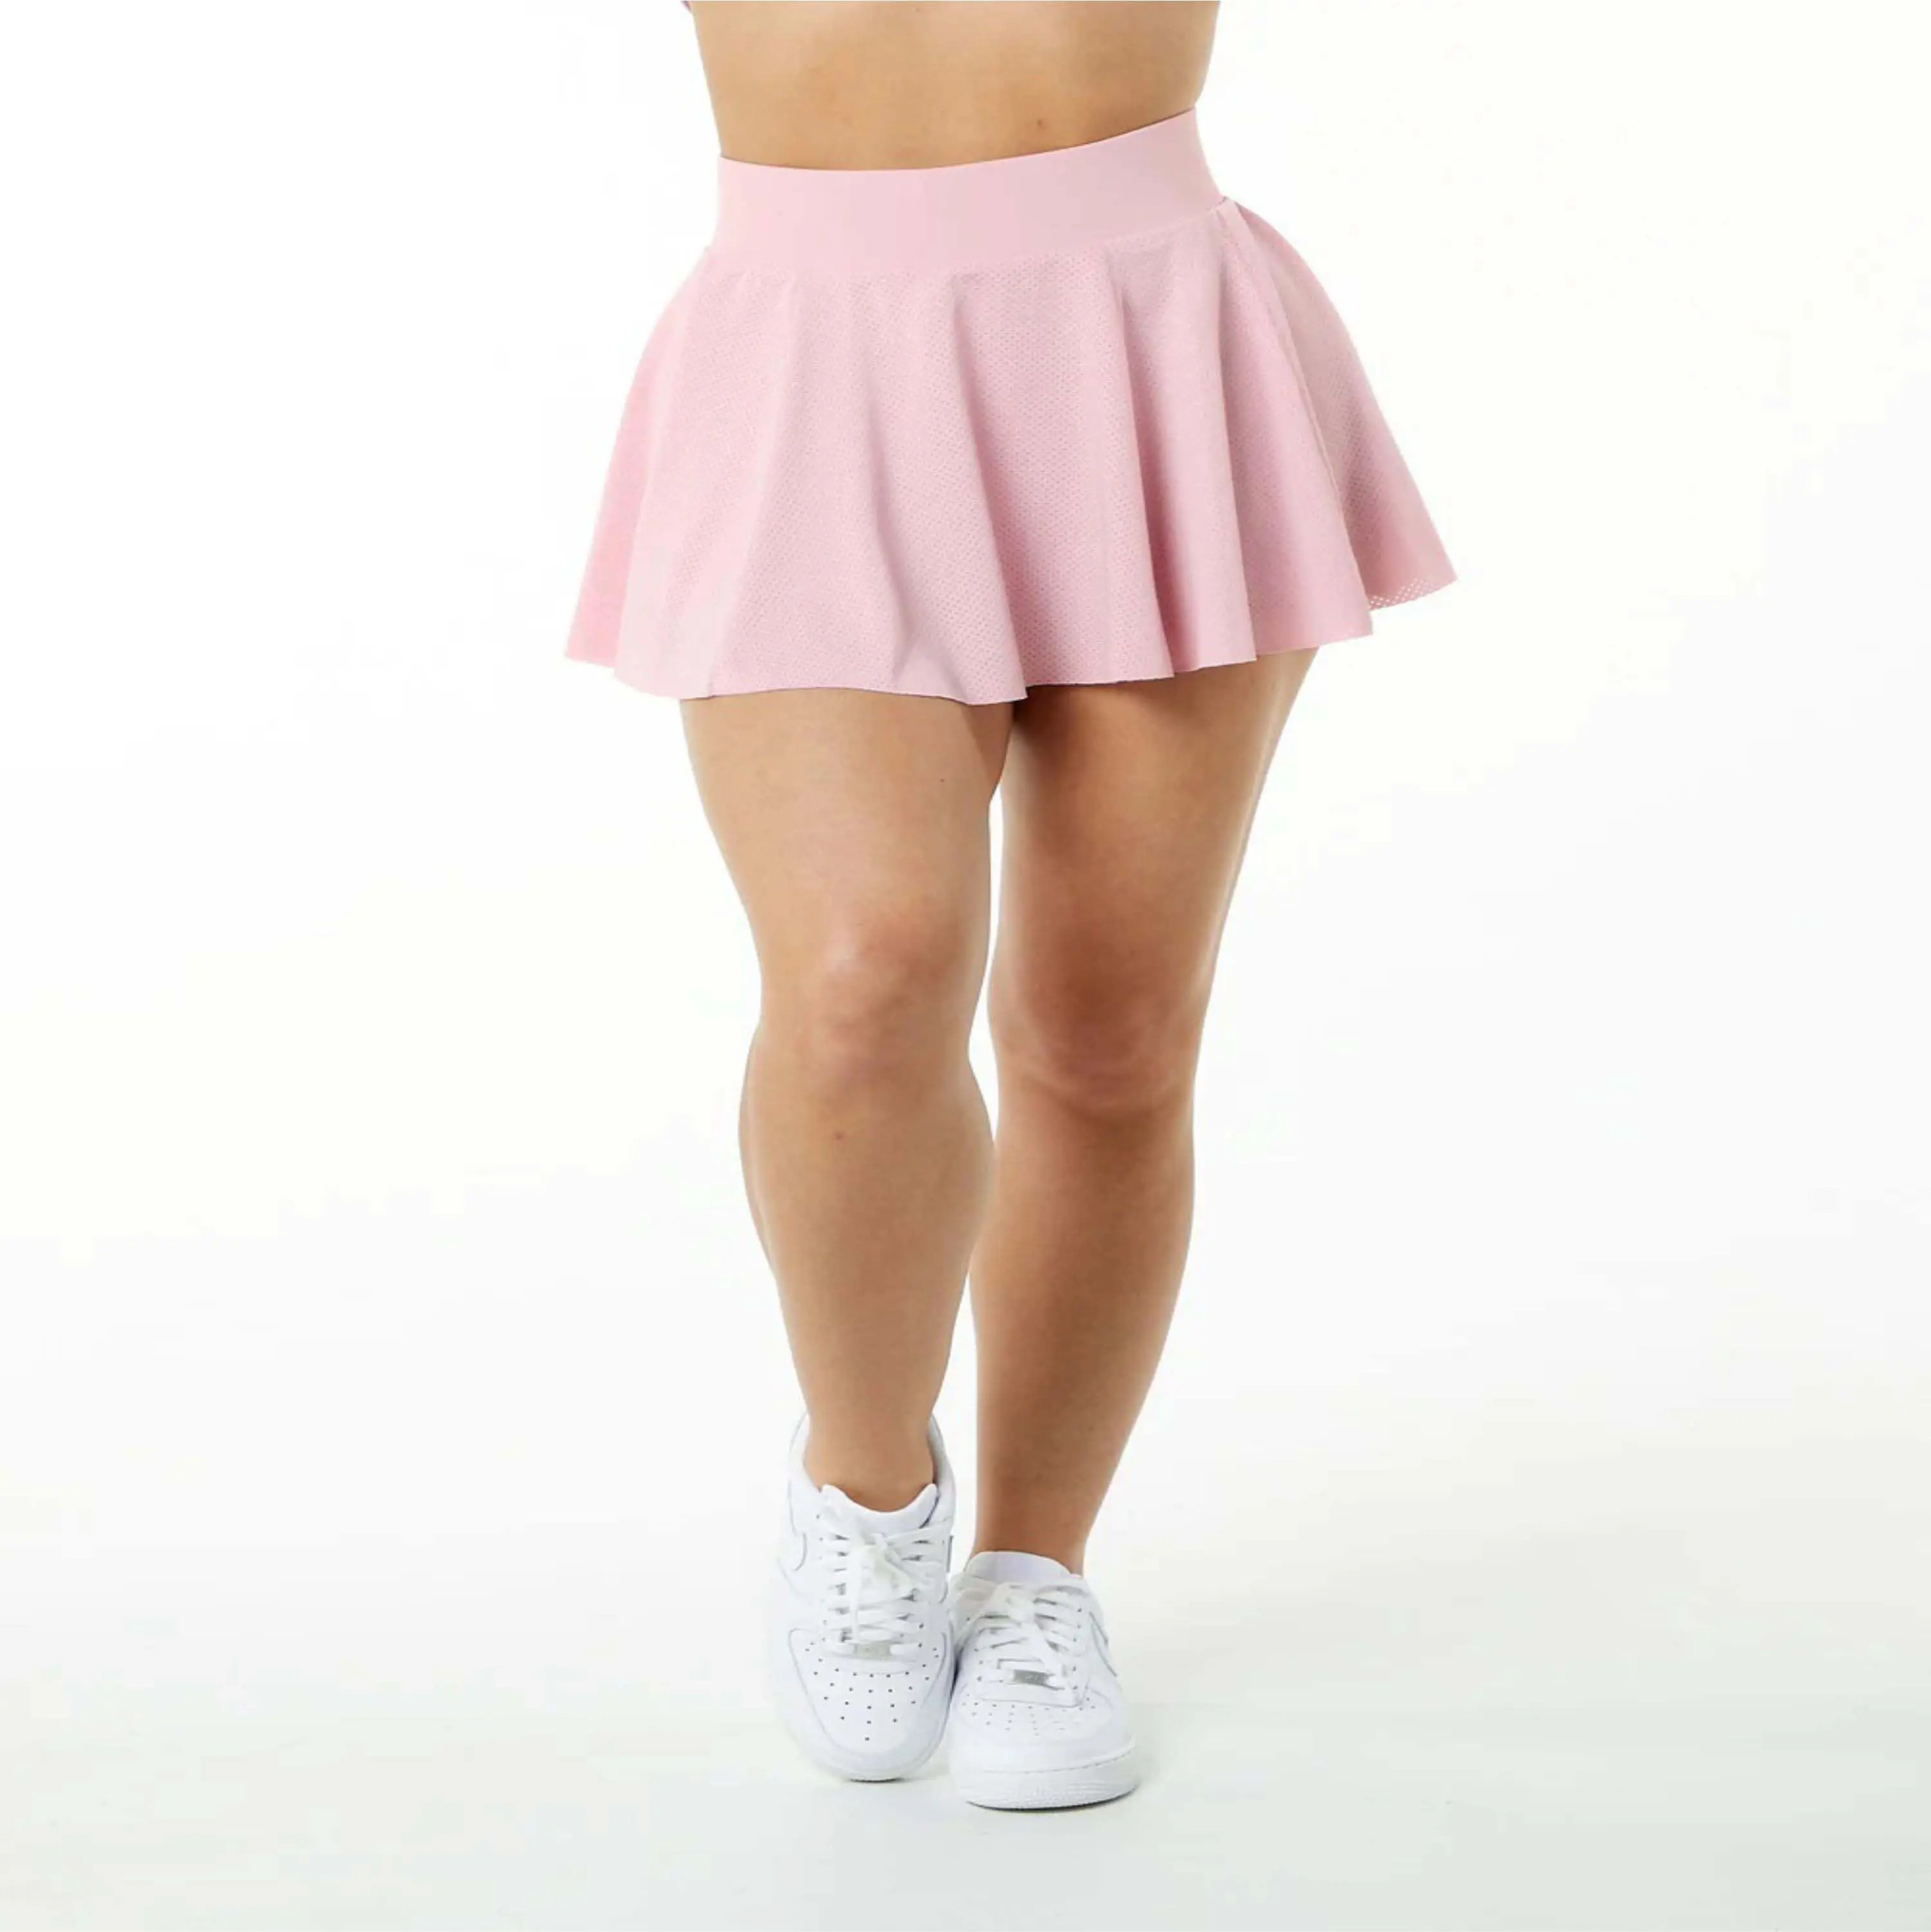 100% camisa de poliéster mulheres malha forro de compressão malha cintura alta rosa saia com respirável curta